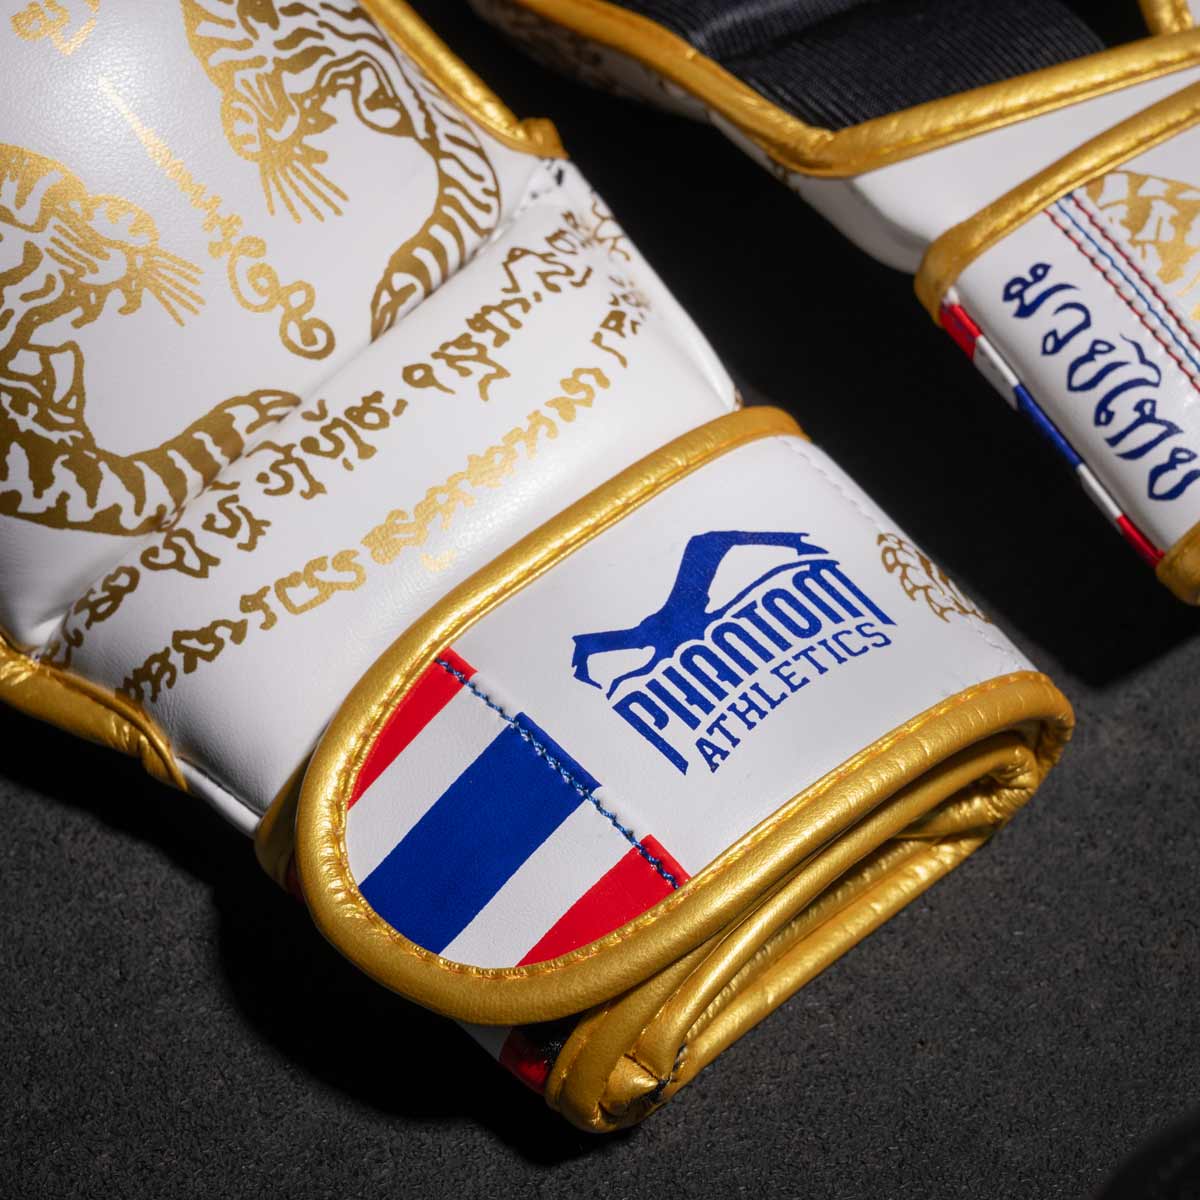 Phantom Muay Thai Handschuhe für Thaiboxen und MMA Sparring, Wettkampf und Training. Im traditionellen Sak Yant Design und der Farbe Weiß/Gold.